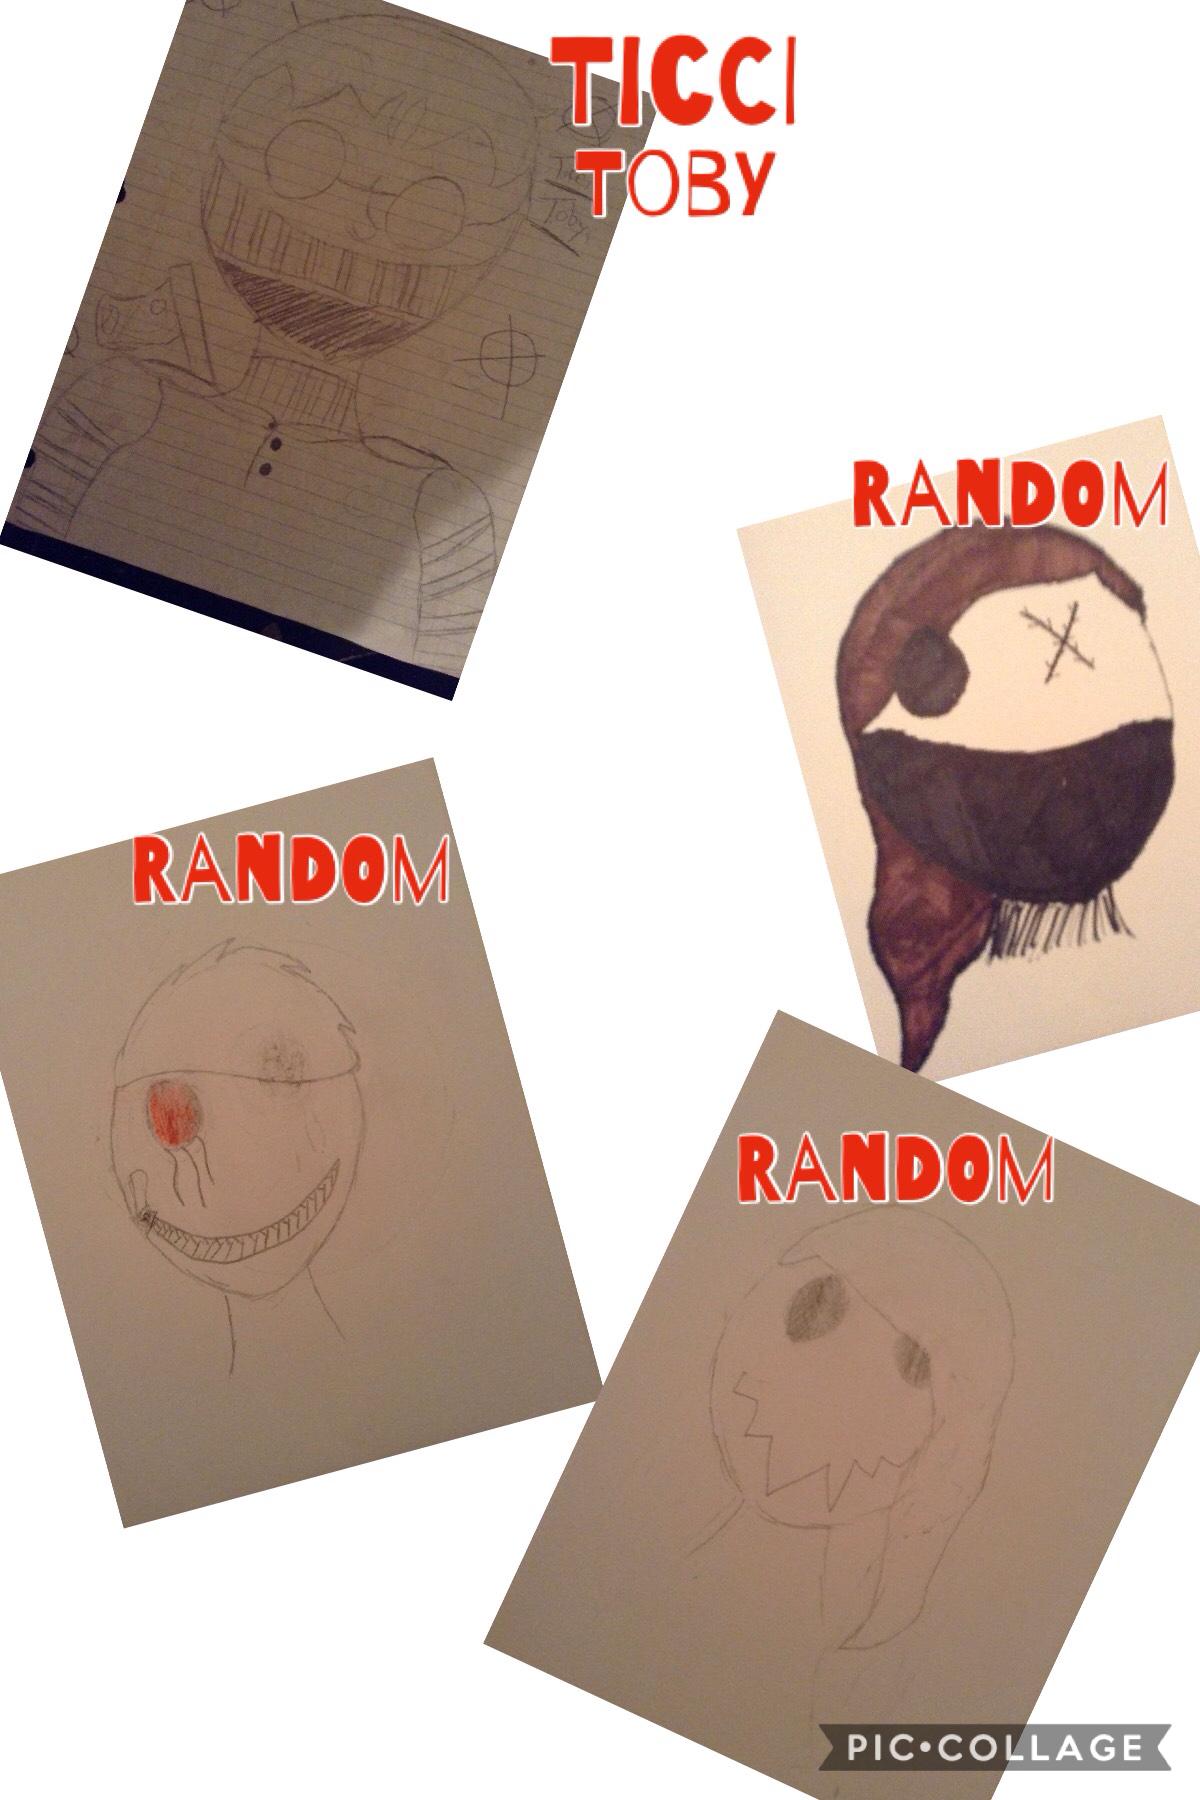 My drawings <3 no hate pls